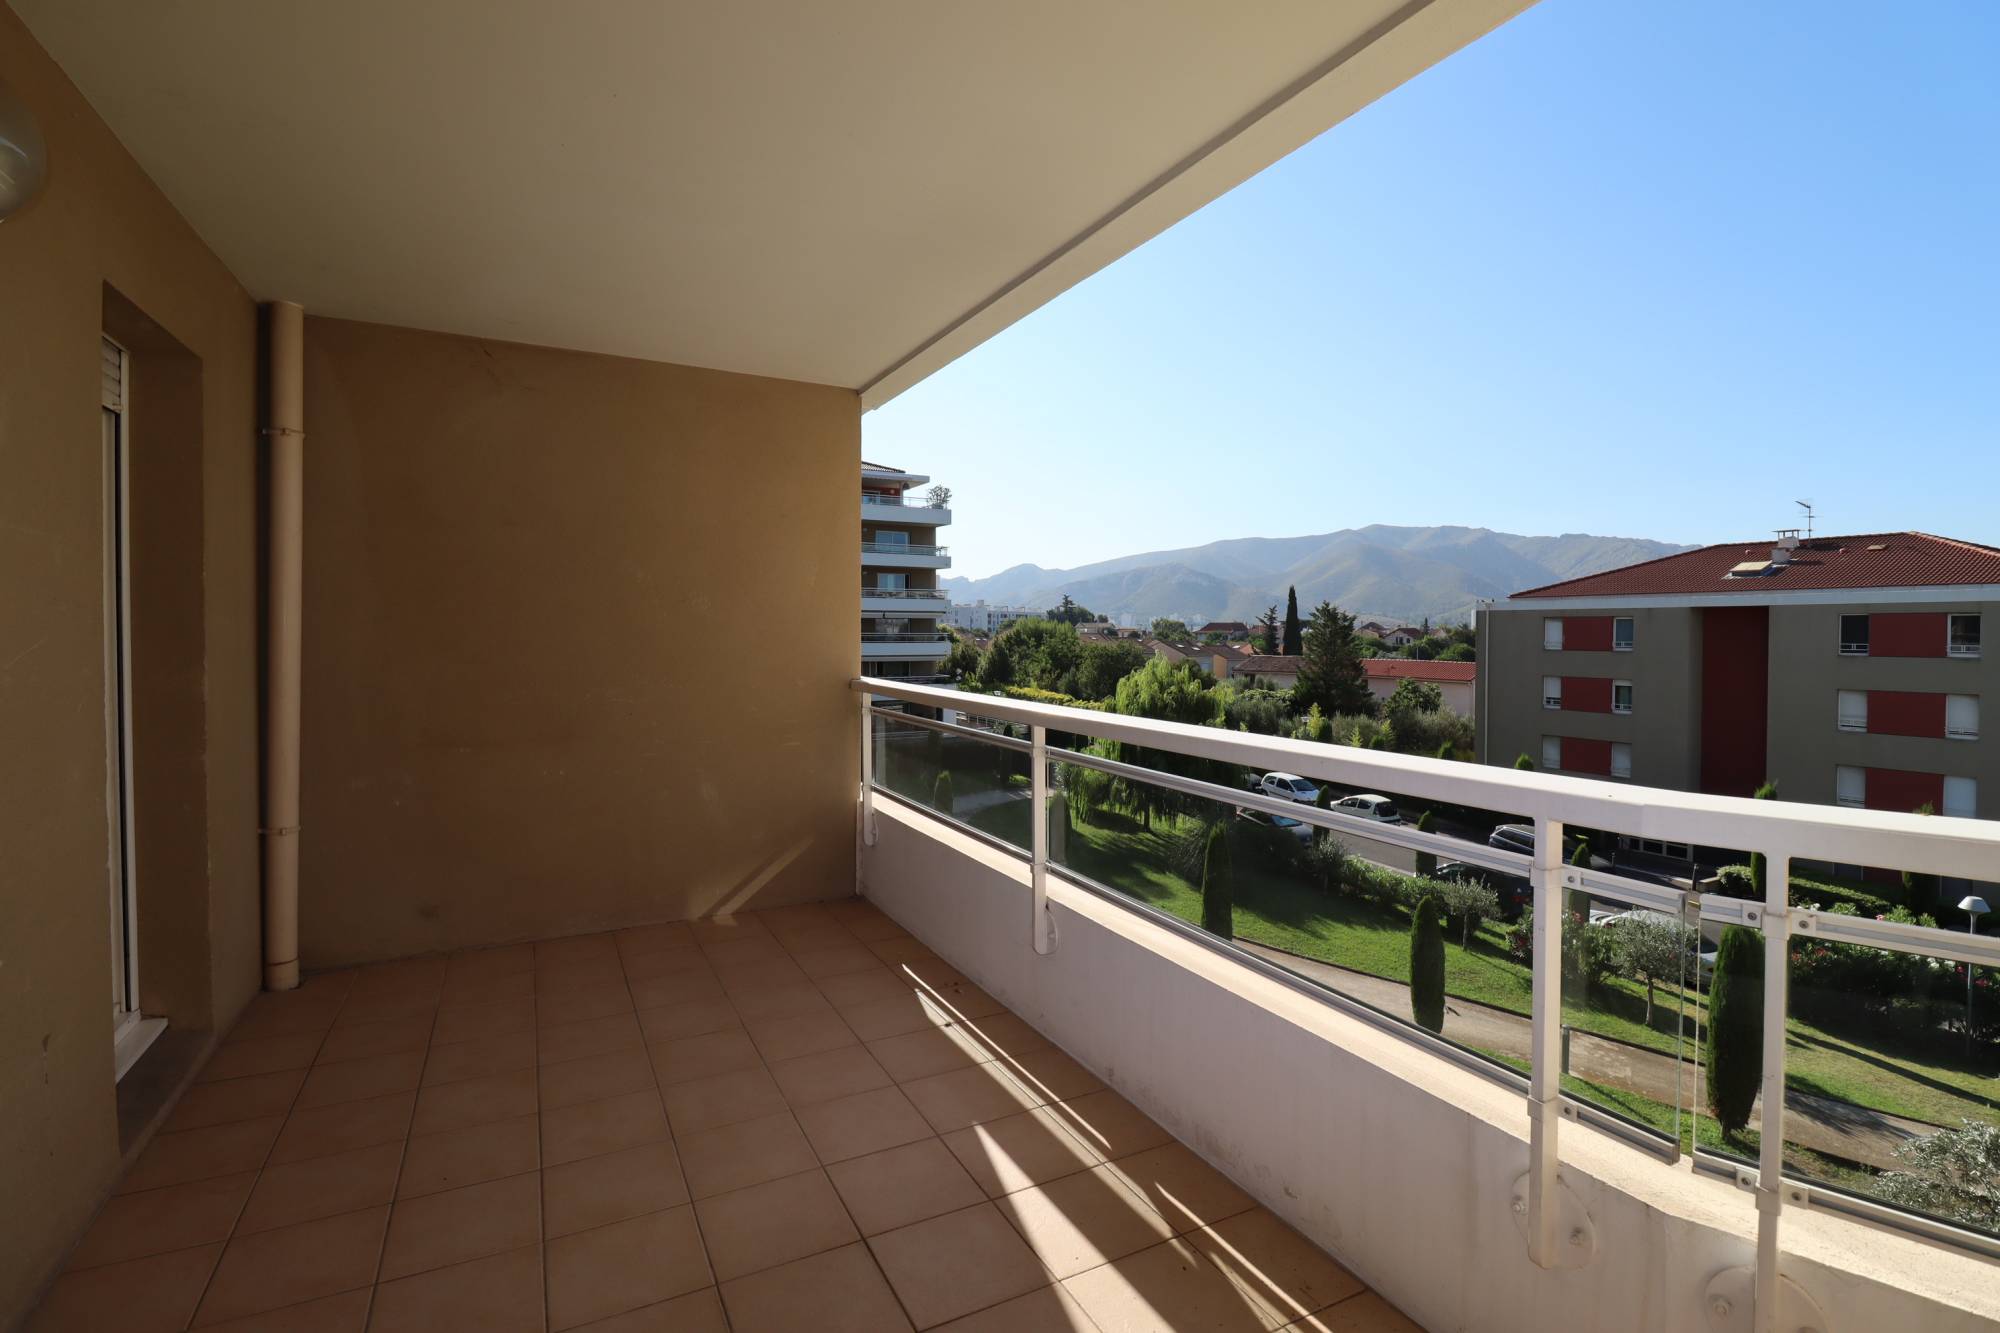 A vendre appartement 3 pièces 68 m² avec terrasse et garage double La fourragère / Saint Jean du désert 13012 Marseille 